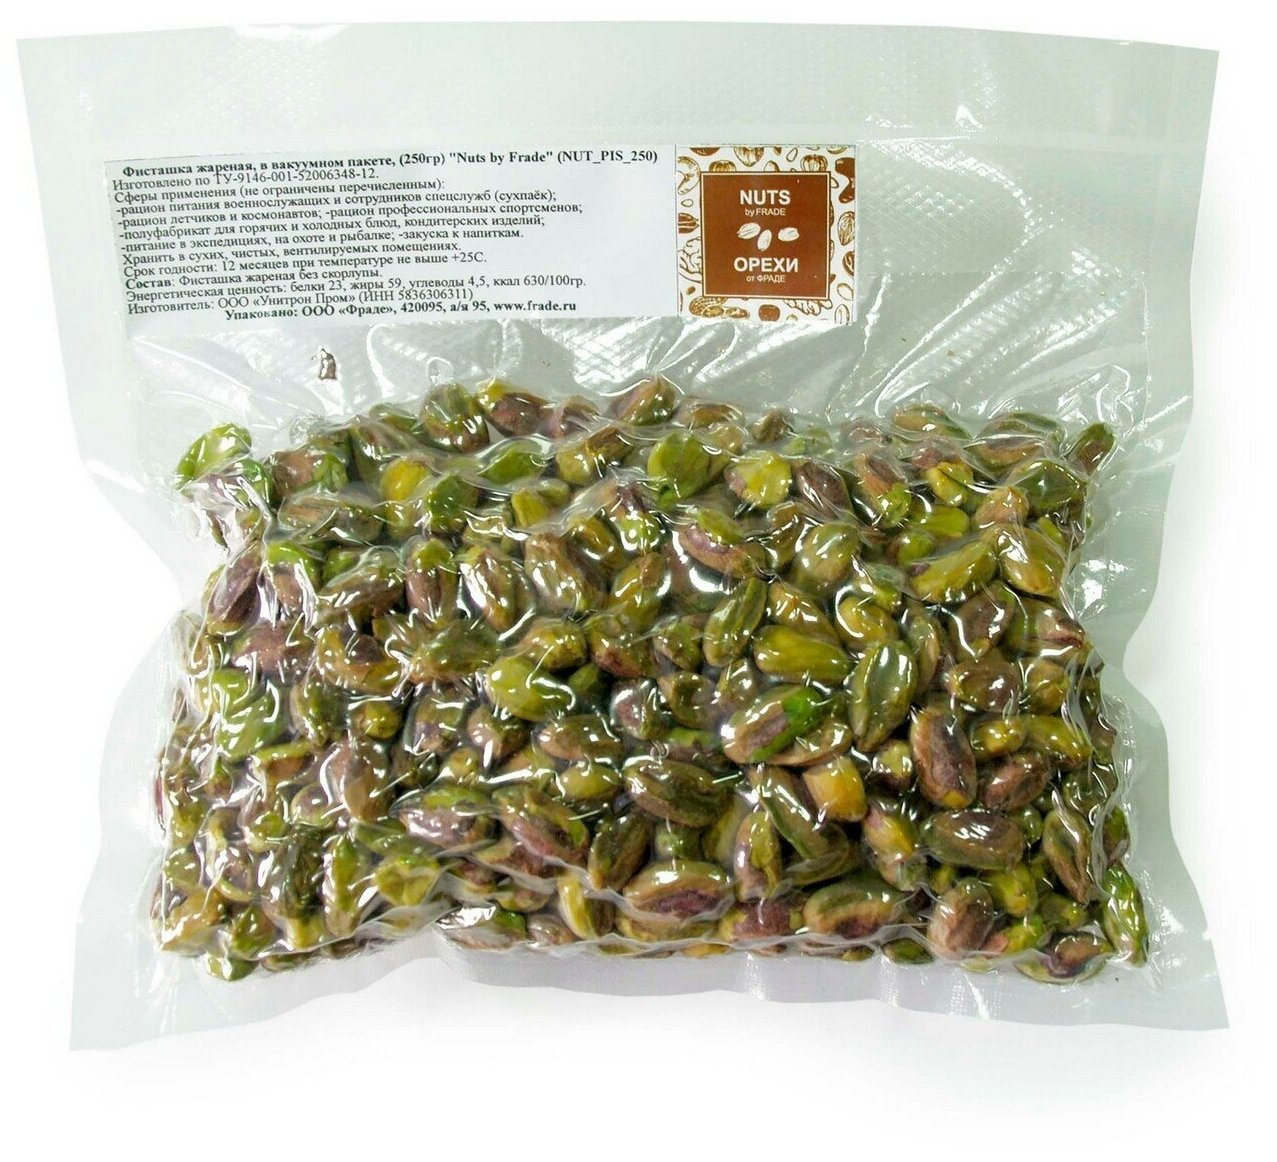 Фисташка чищеная жареная, в вакуумном пакете, (250гр) "Nuts by Frade" - фотография № 1